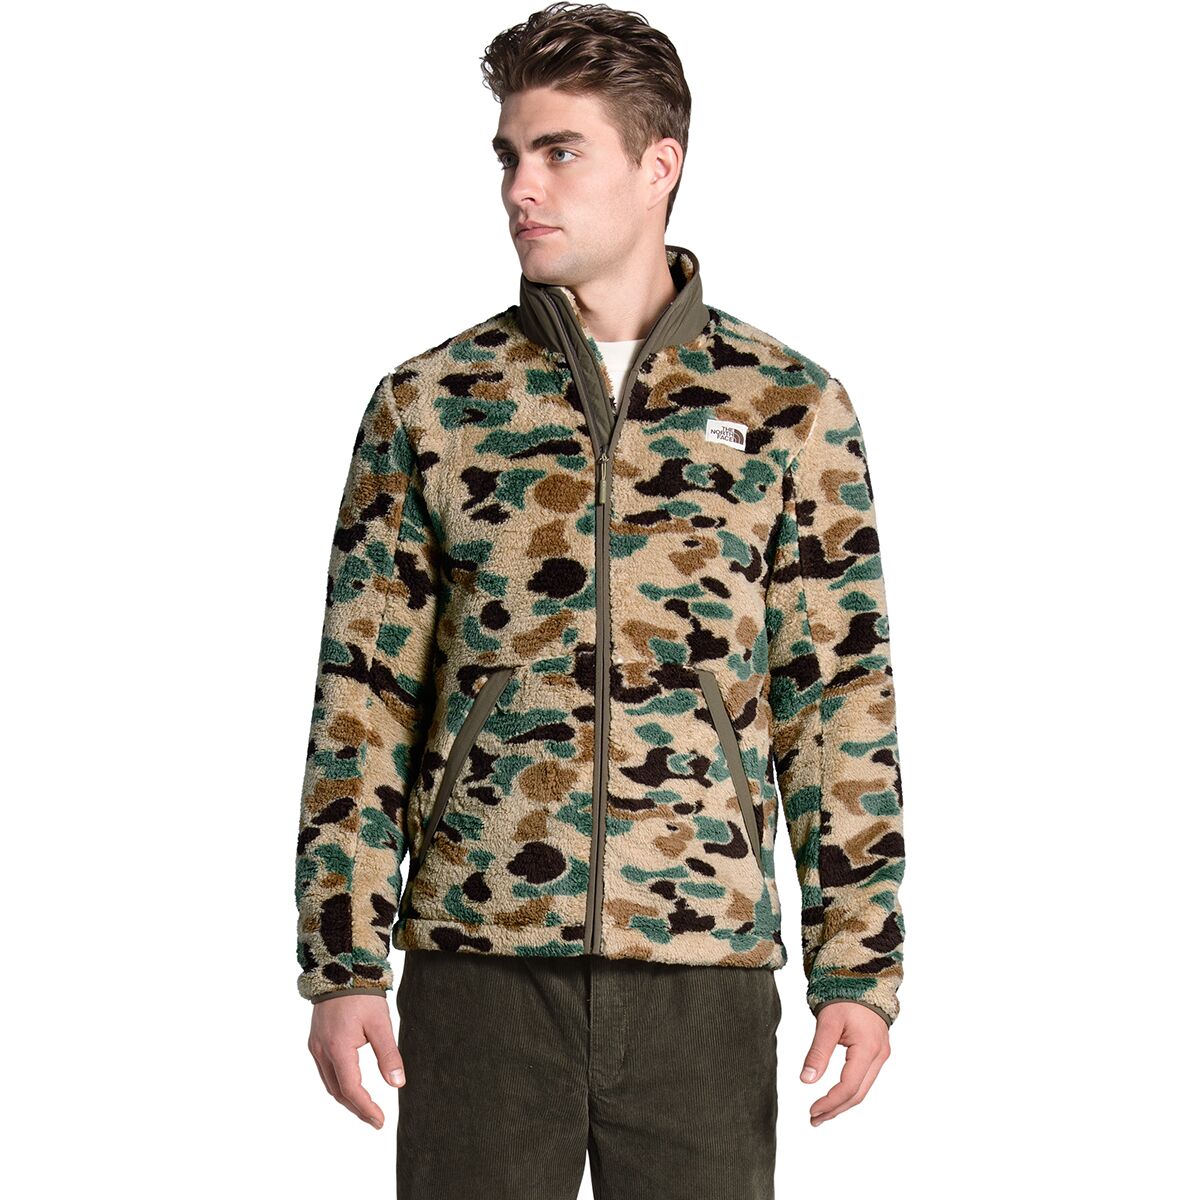 Campshire Full-Zip Fleece Jacket - Men